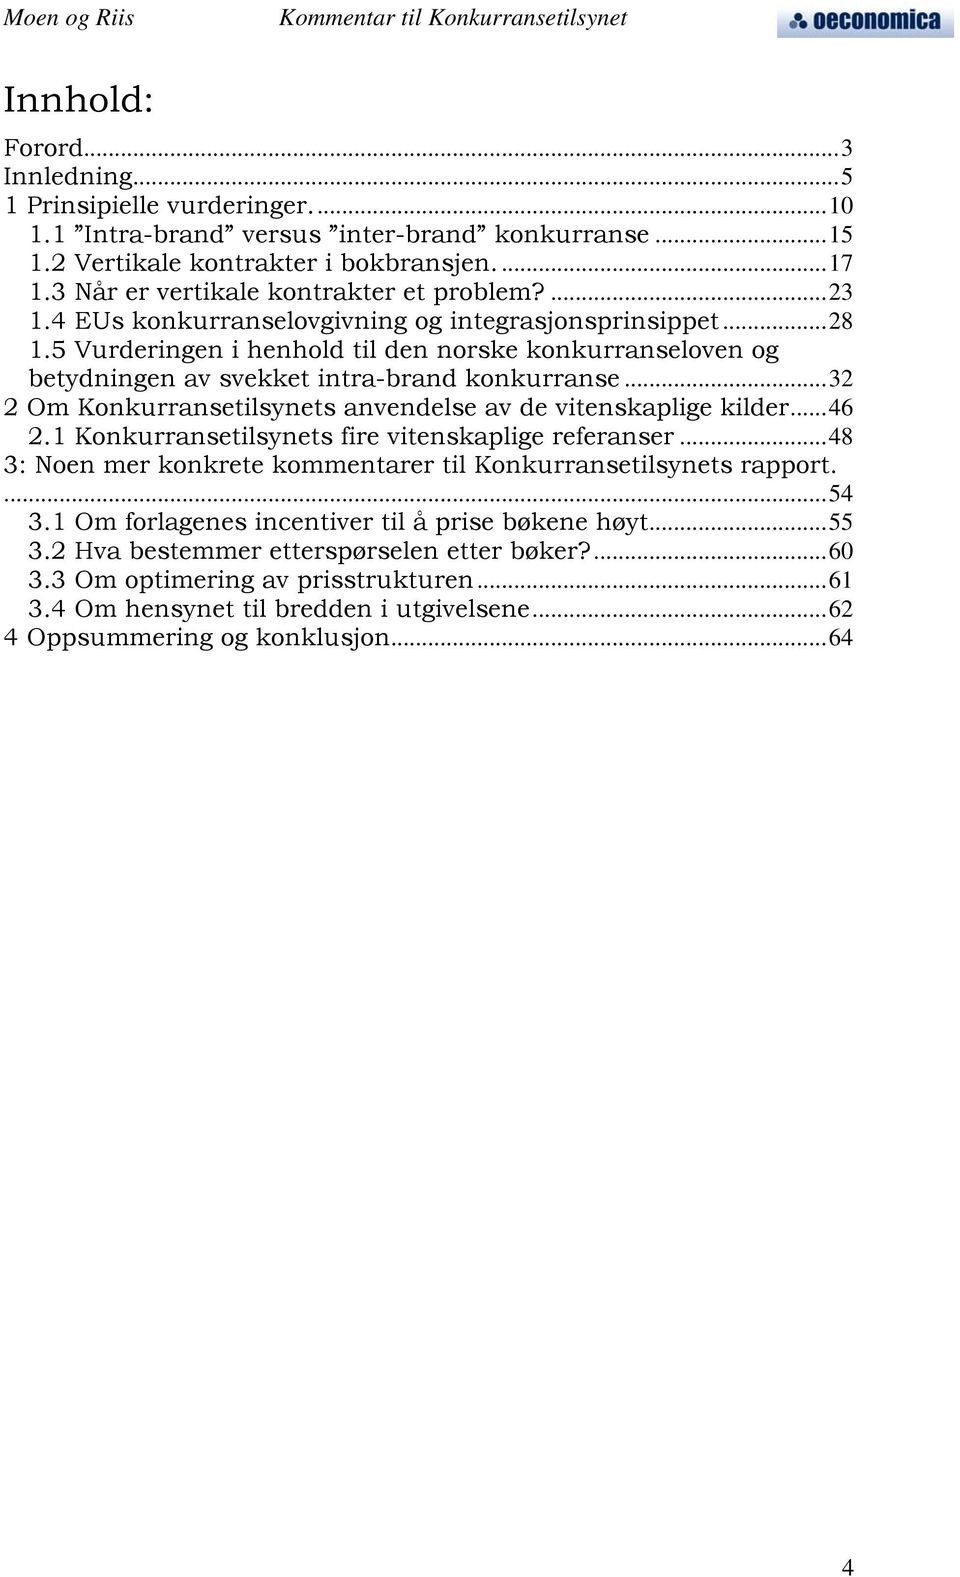 5 Vurderingen i henhold til den norske konkurranseloven og betydningen av svekket intra-brand konkurranse...32 2 Om Konkurransetilsynets anvendelse av de vitenskaplige kilder...46 2.